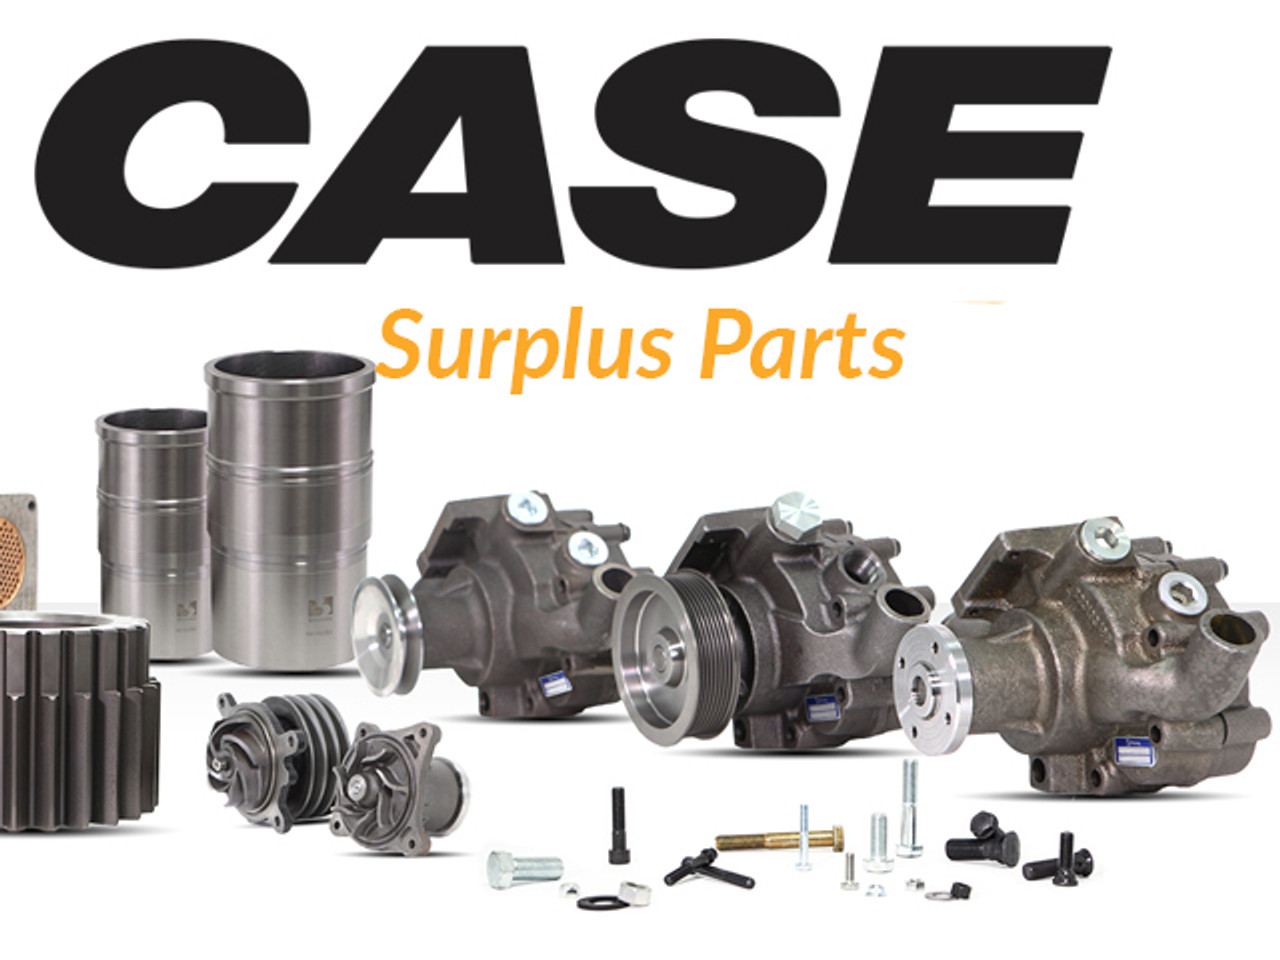 case-online-surplus-parts-image